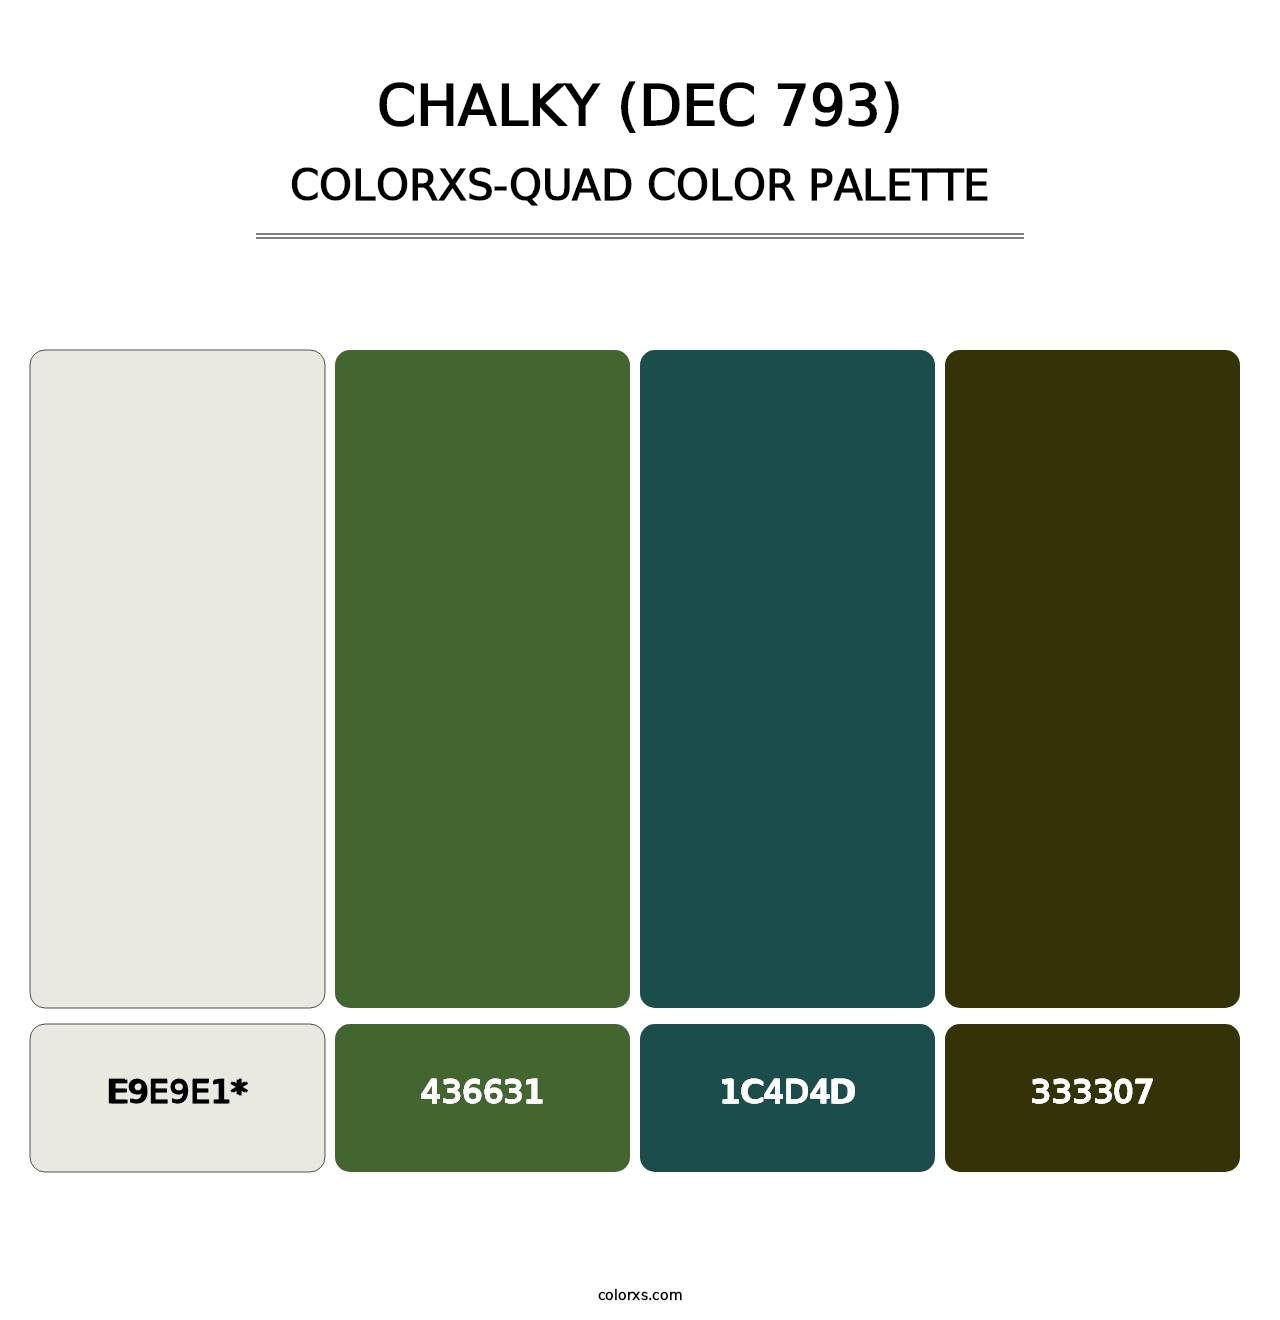 Chalky (DEC 793) - Colorxs Quad Palette